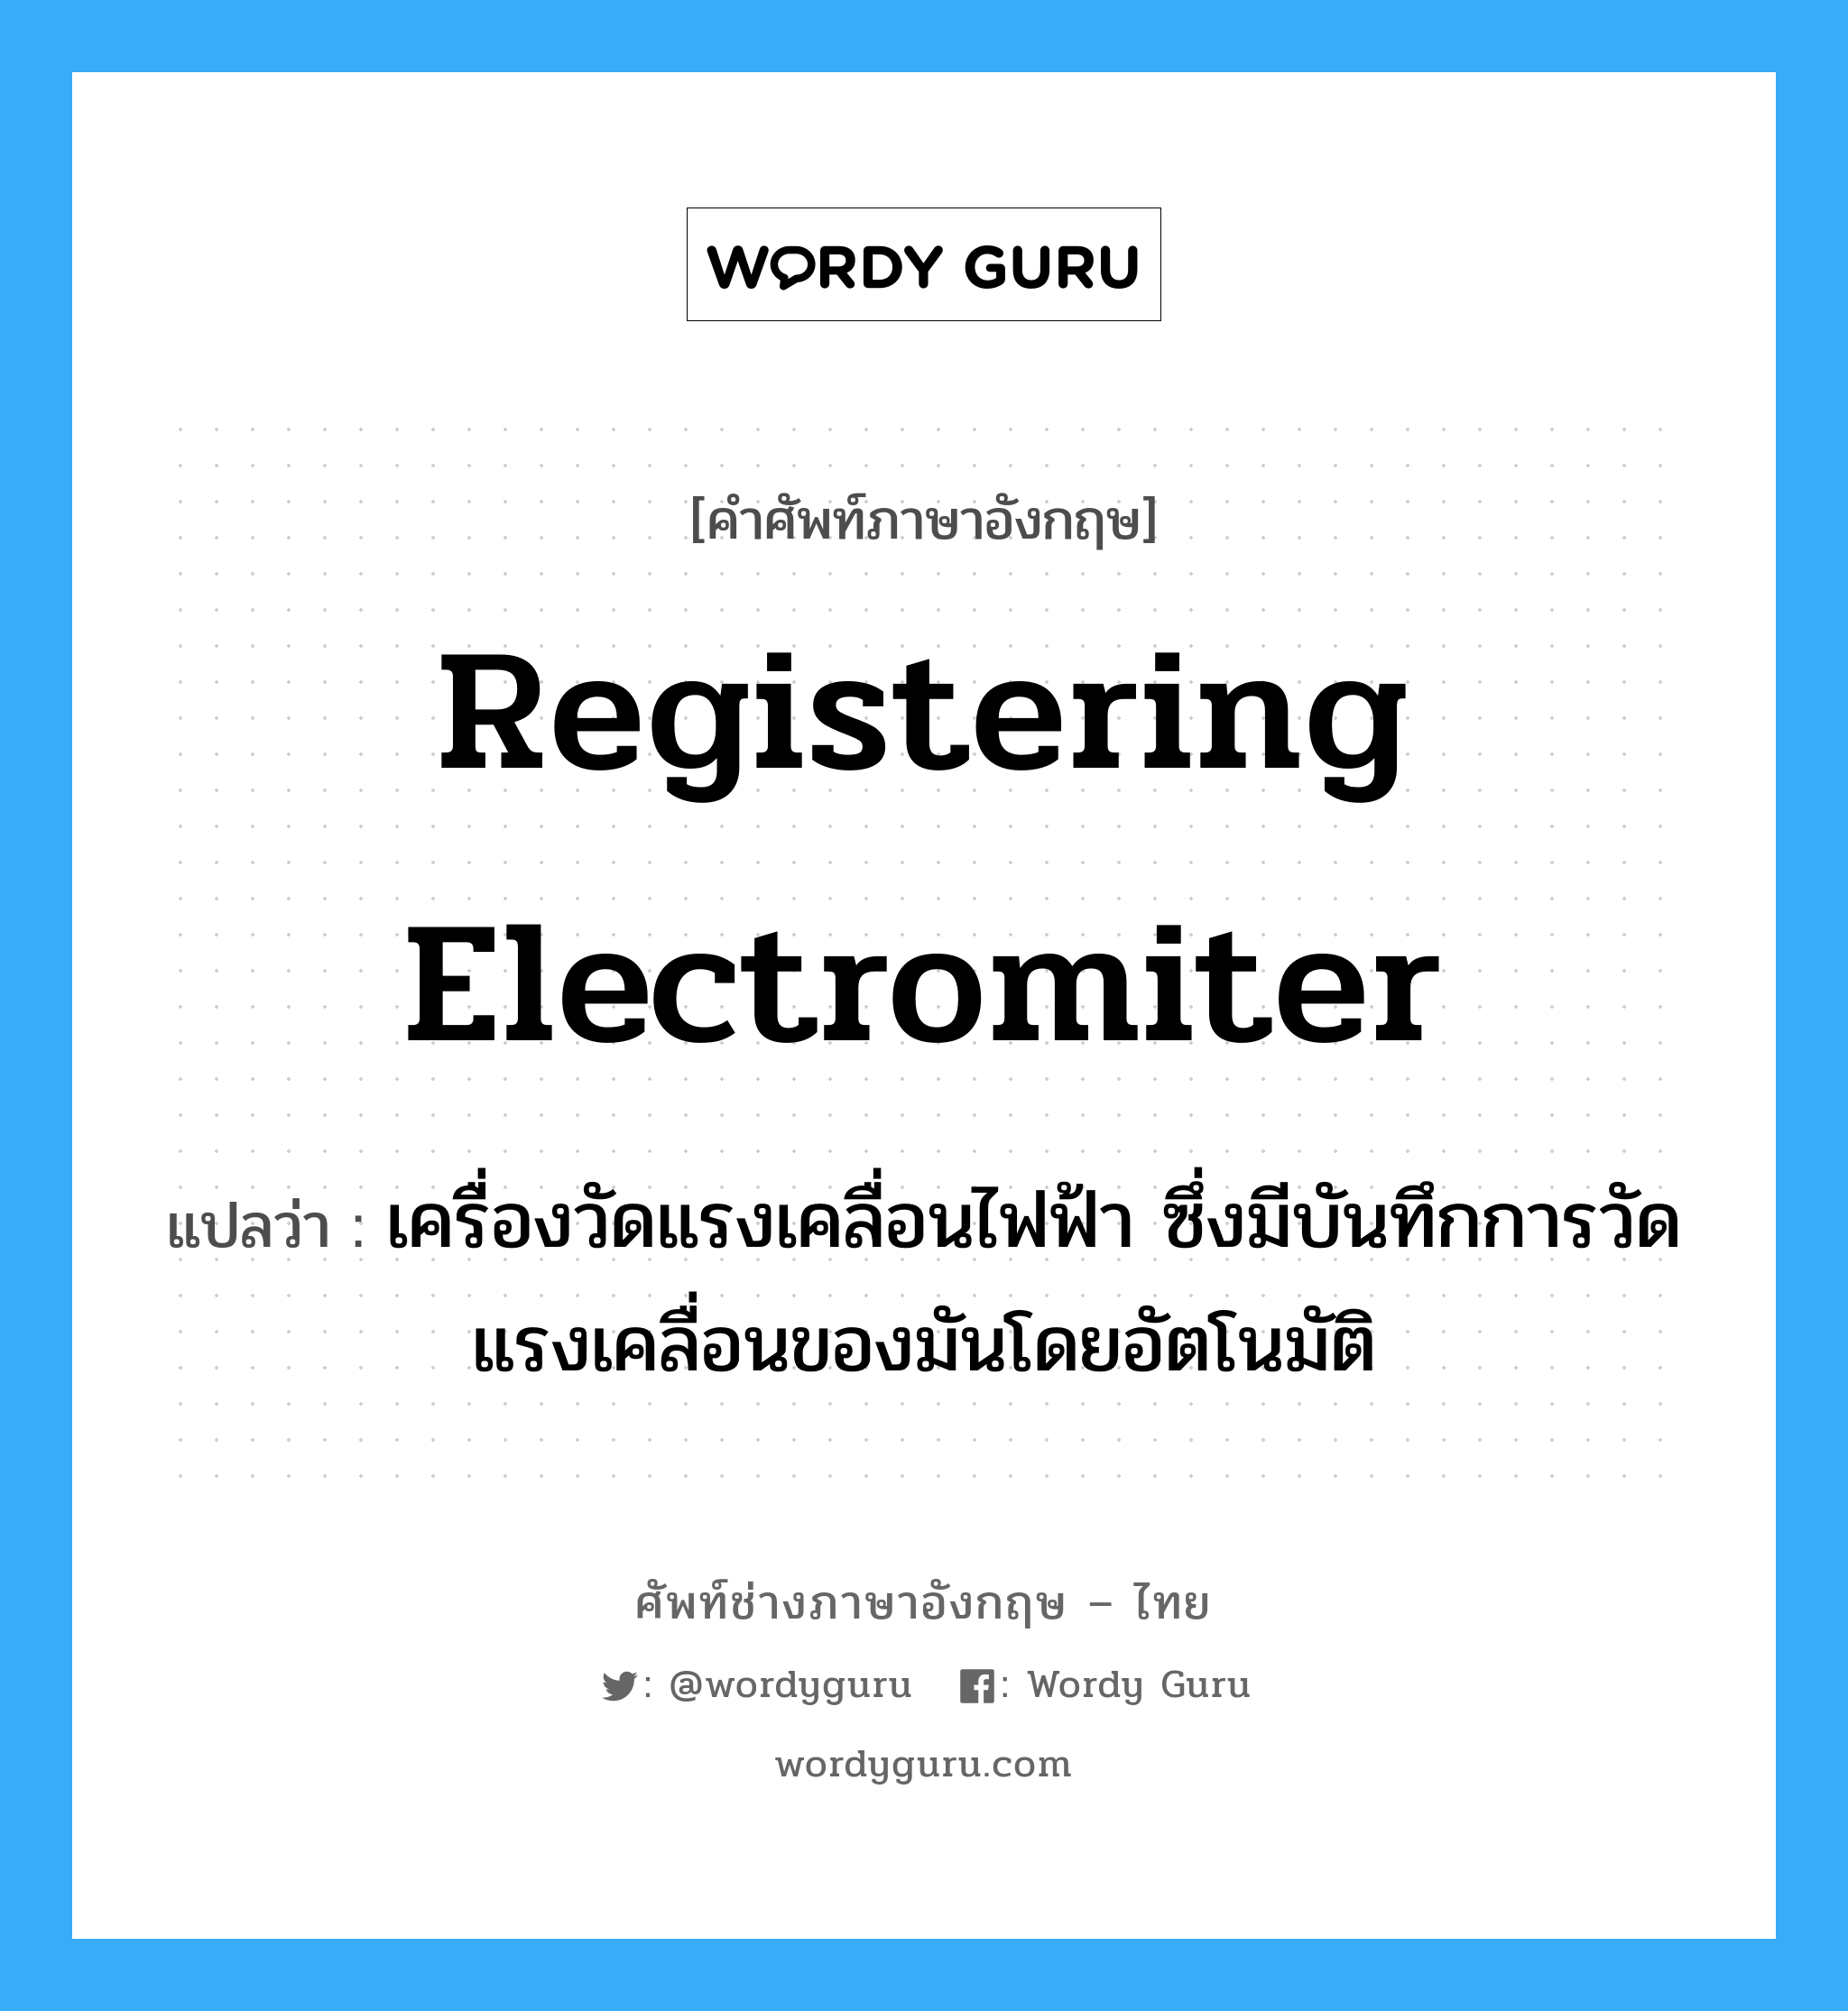 registering electromiter แปลว่า?, คำศัพท์ช่างภาษาอังกฤษ - ไทย registering electromiter คำศัพท์ภาษาอังกฤษ registering electromiter แปลว่า เครื่องวัดแรงเคลื่อนไฟฟ้า ซึ่งมีบันทึกการวัดแรงเคลื่อนของมันโดยอัตโนมัติ